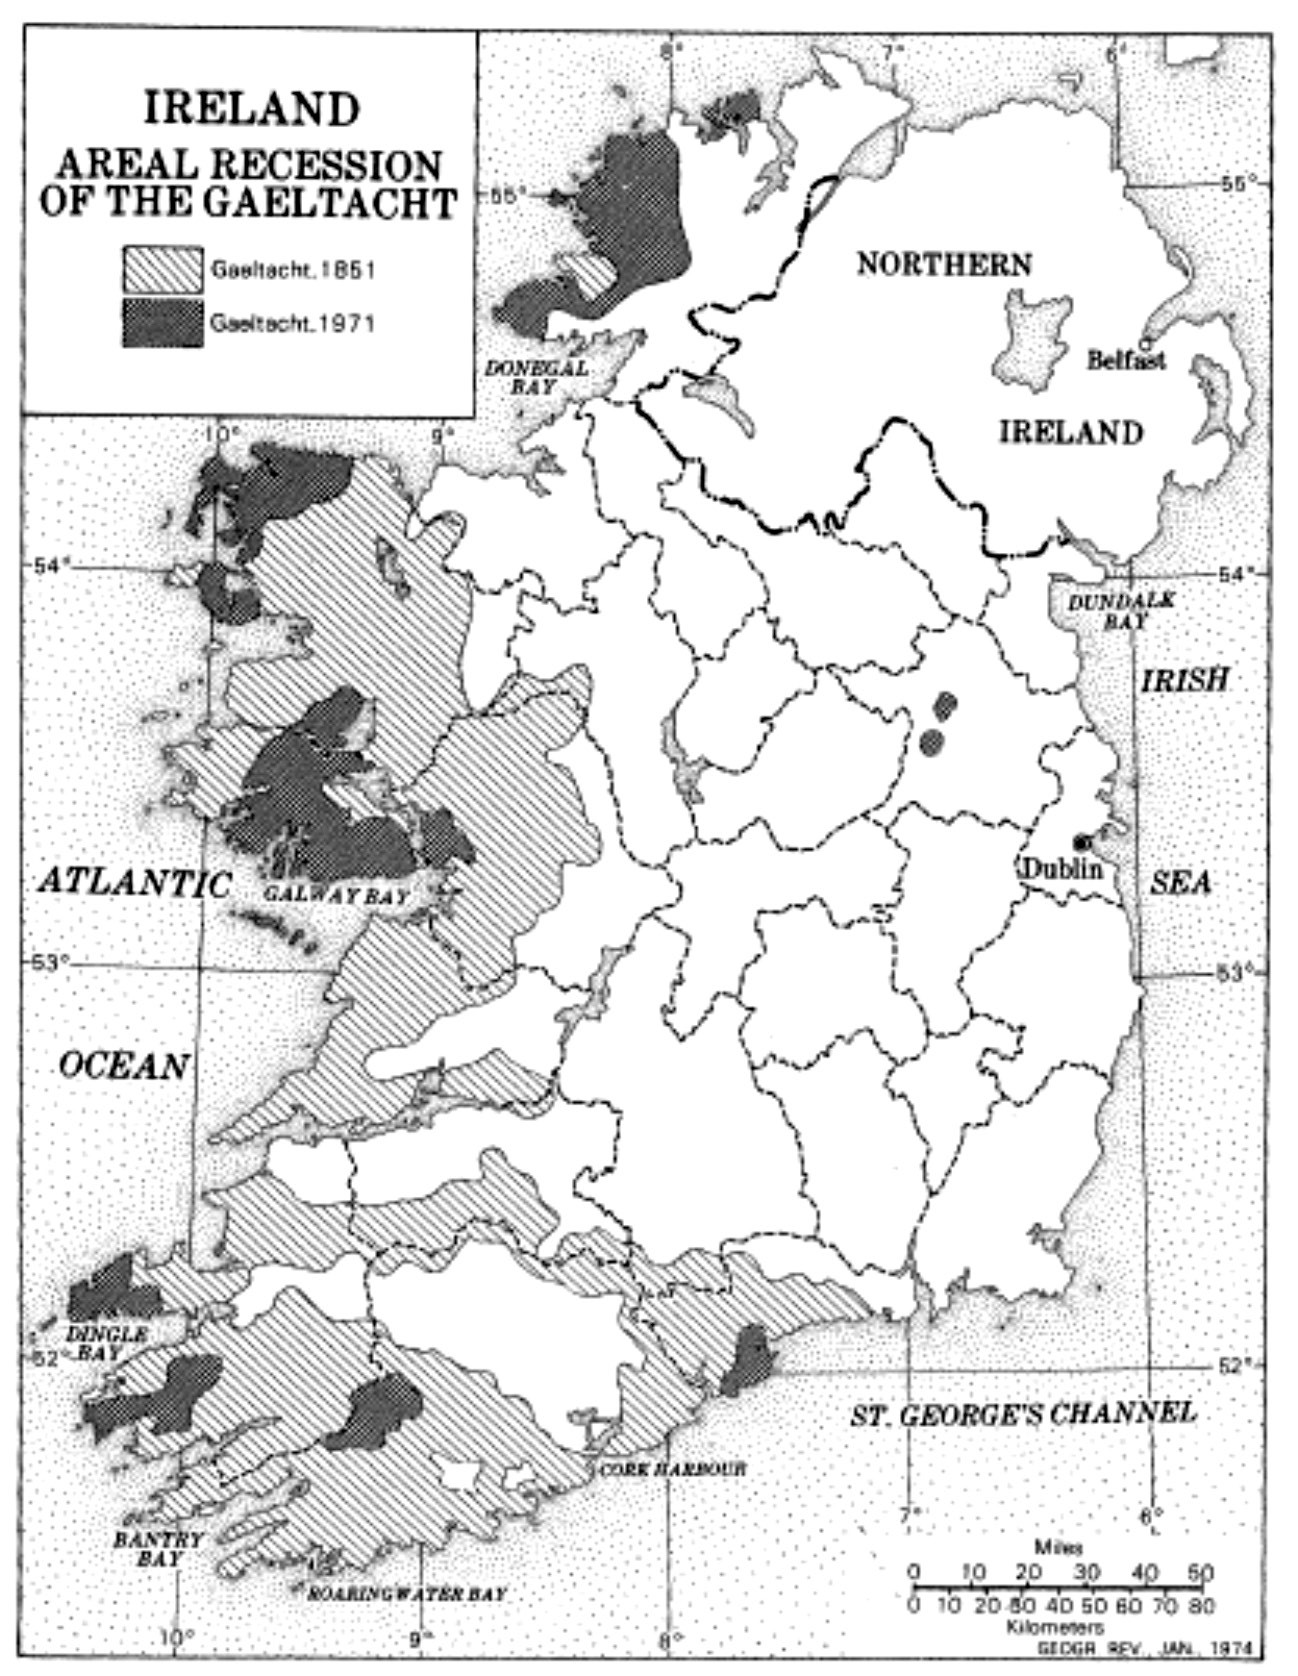 El retroceso del Gaeltacht regiones de habla irlandesa en gris oscuro